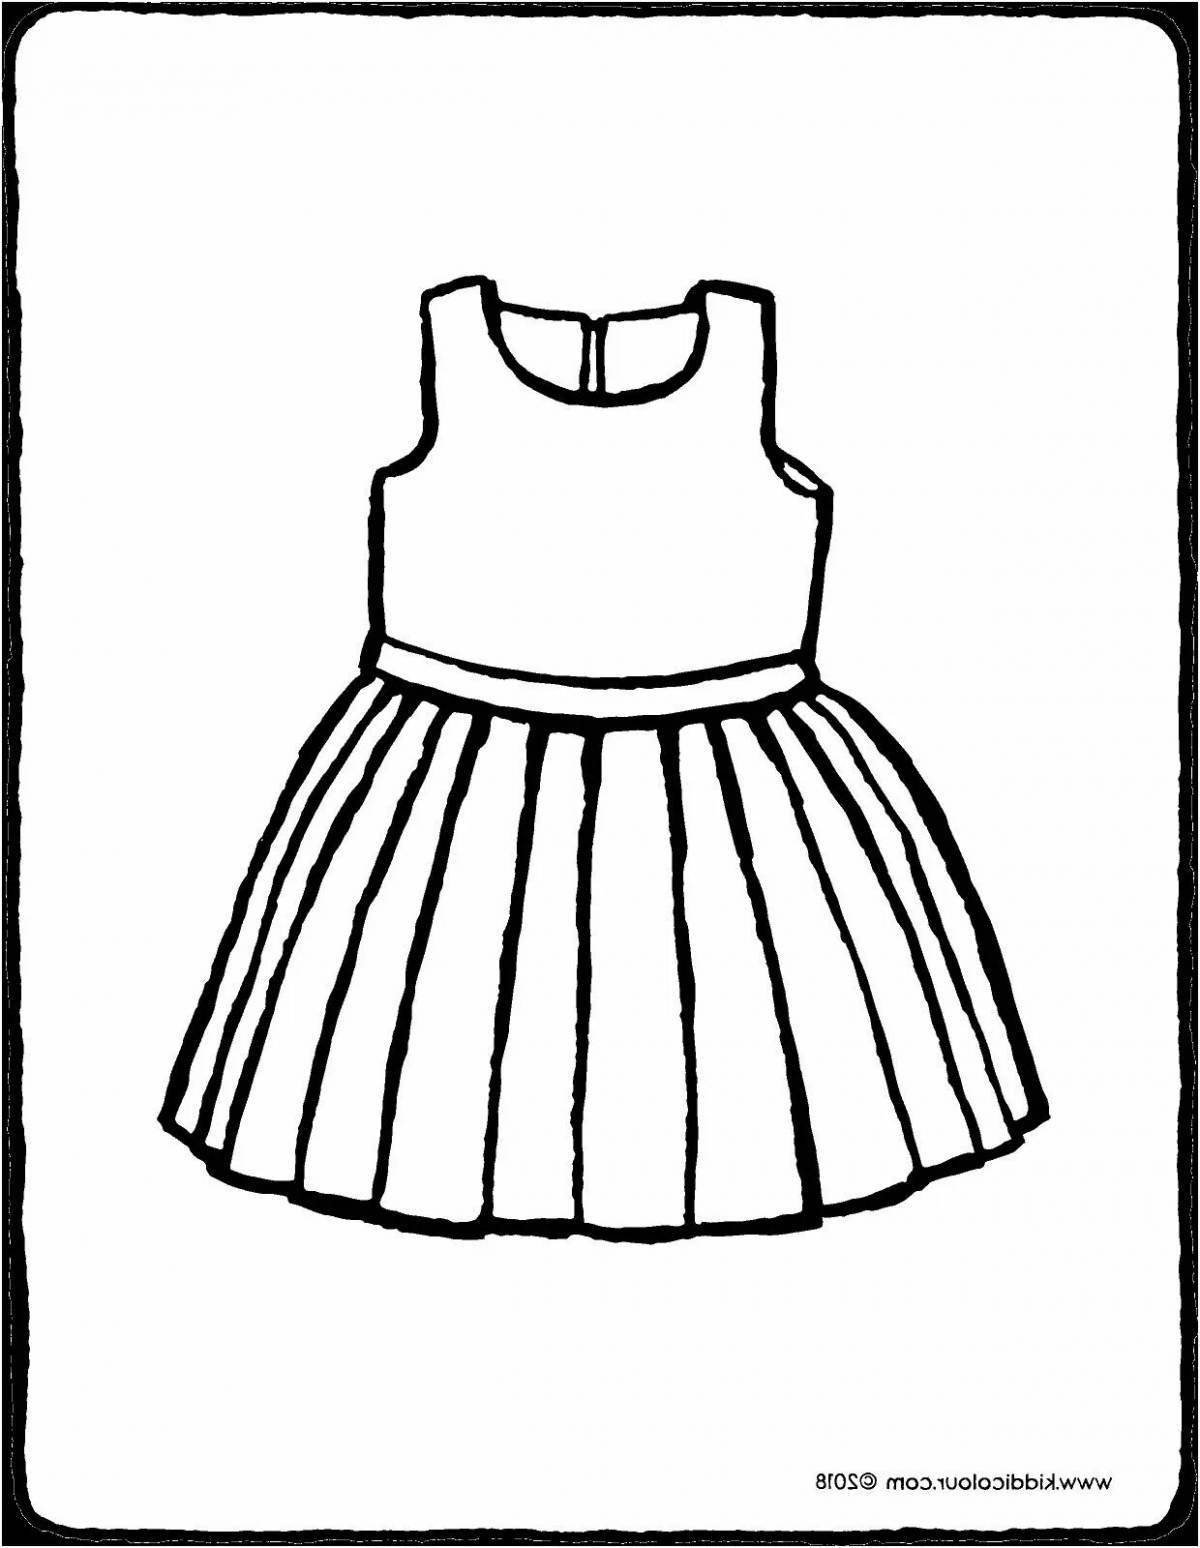 Яркое платье-раскраска для детей 5-6 лет